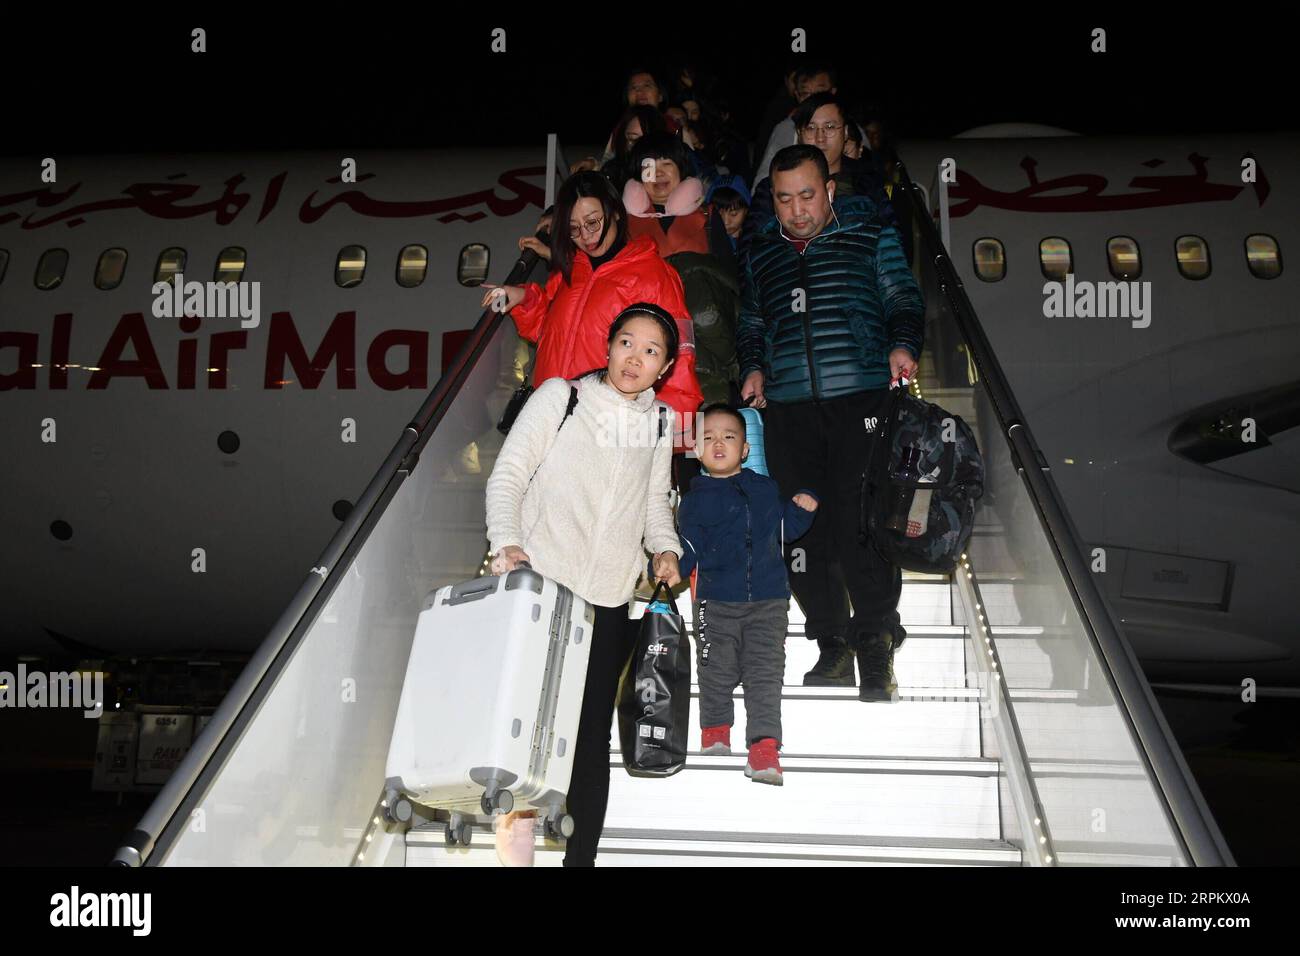 200119 -- CASABLANCA, 19 gennaio 2020 -- i passeggeri cinesi arrivano all'aeroporto Mohammed V dopo aver preso il primo volo diretto da Pechino a Casablanca del Marocco, 17 gennaio 2020. La compagnia aerea nazionale marocchina Royal Air Maroc RAM ha lanciato venerdì i primi voli non-stop tra l'aeroporto Mohammed V di Casablanca e l'aeroporto internazionale di Pechino Daxing. Foto di /Xinhua MAROCCO-CASABLANCA-VOLO DIRETTO-PECHINO Chadi PUBLICATIONxNOTxINxCHN Foto Stock